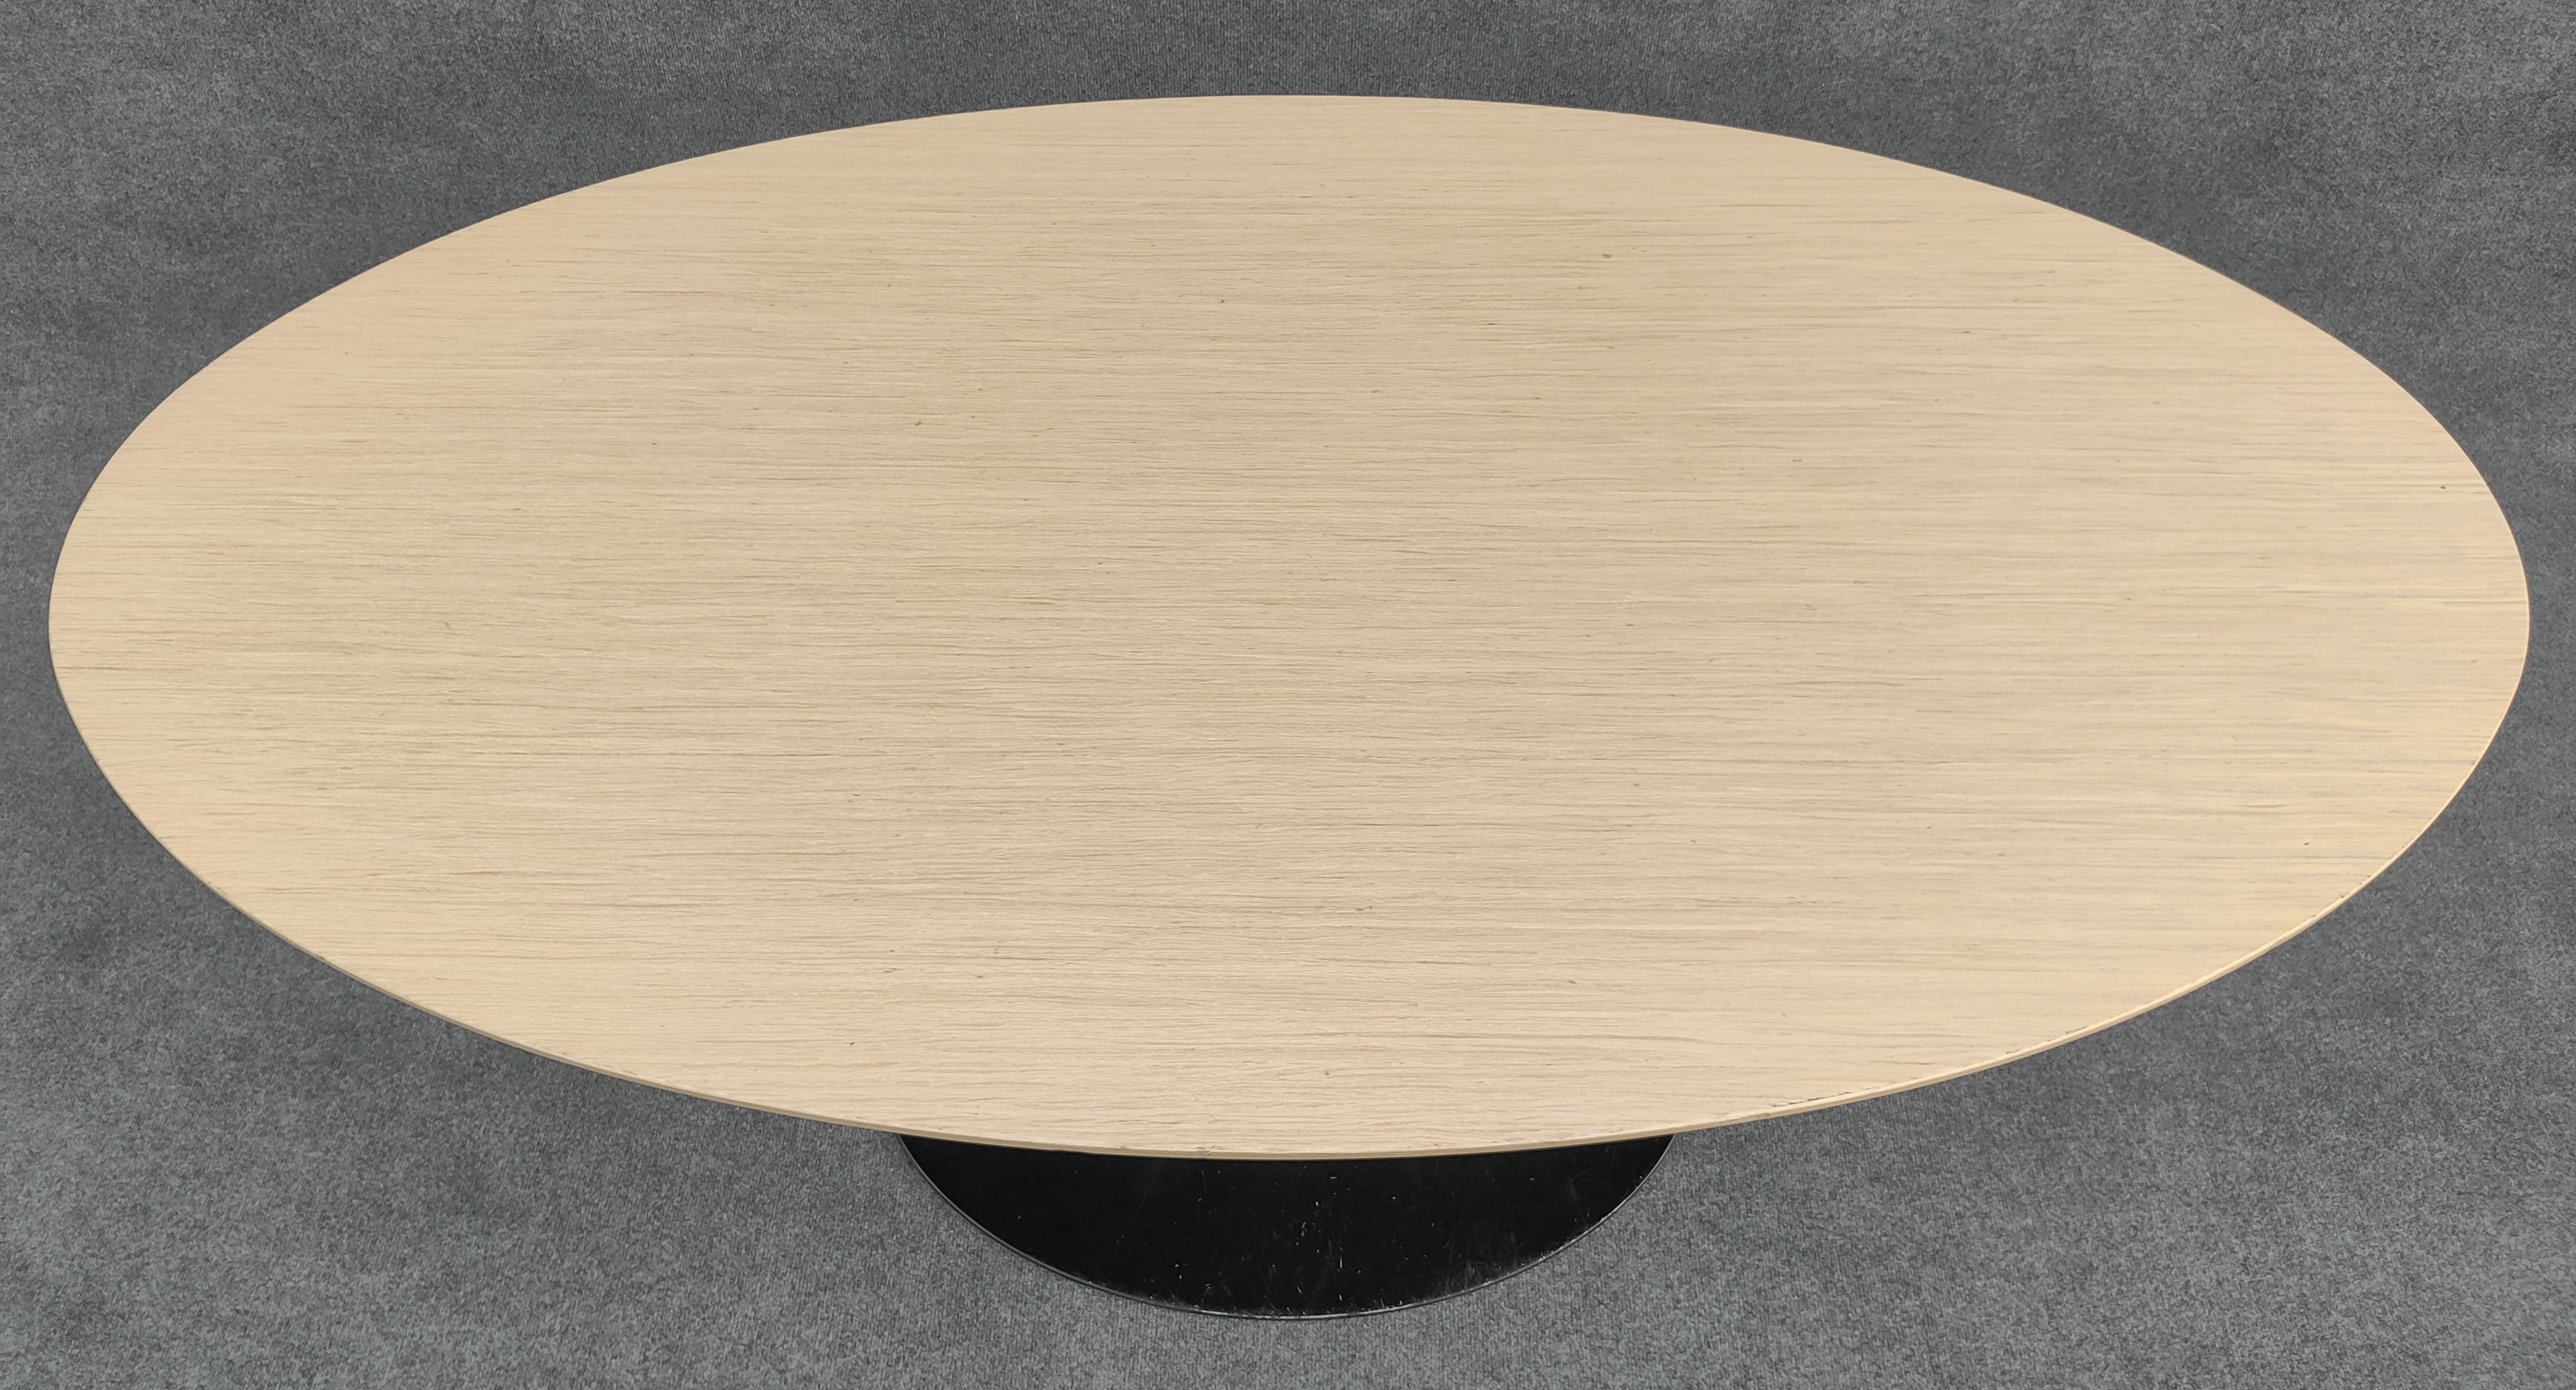 Mid-Century Modern Eero Saarinen Knoll Oval Tulip Dining Table 66x38